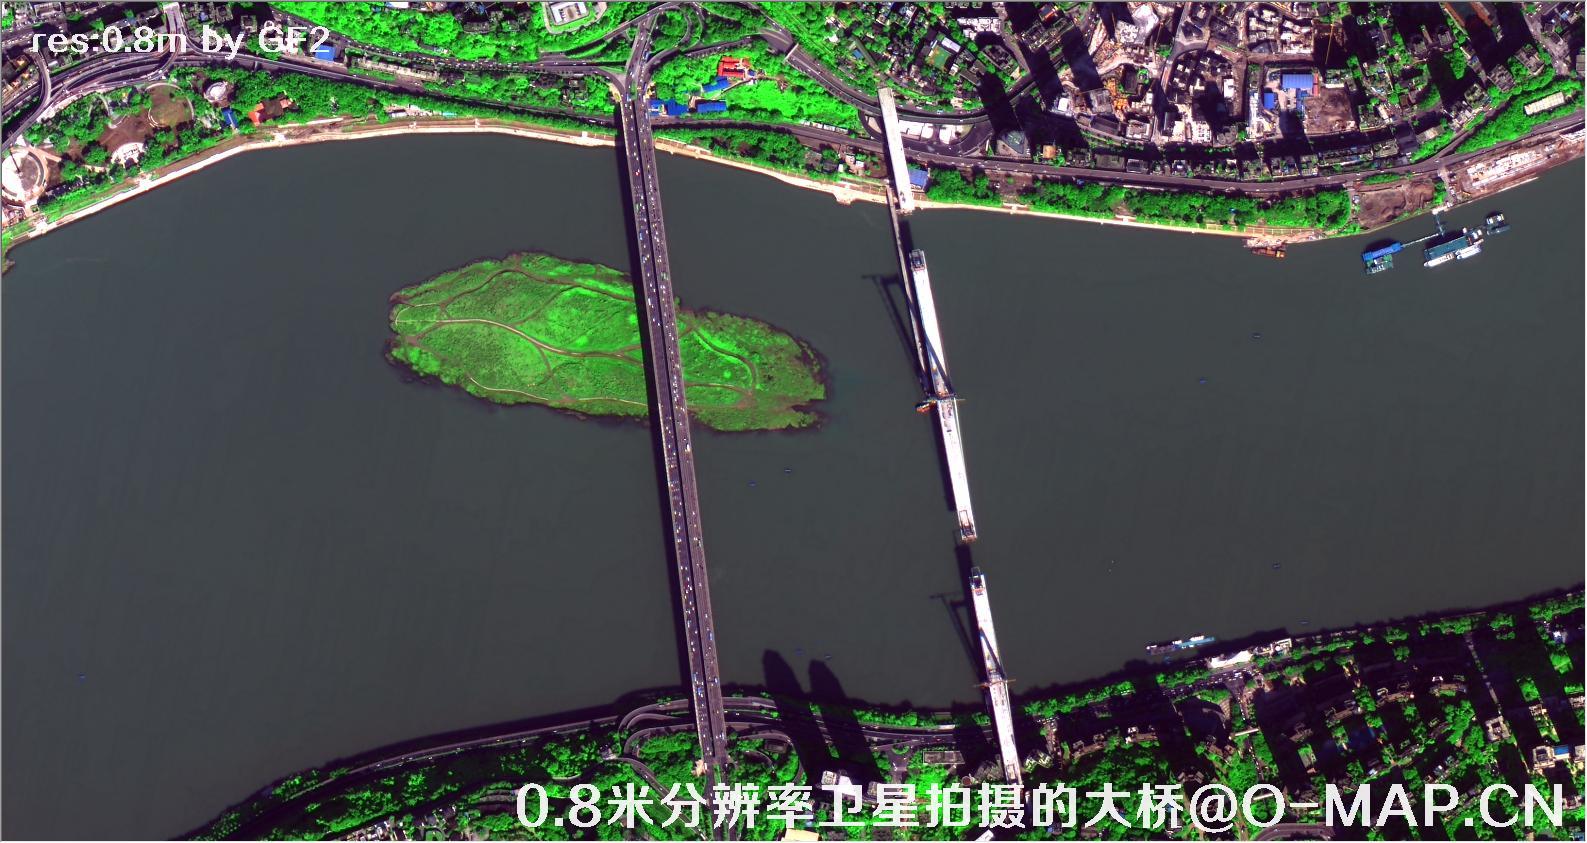 0.8米分辨率卫星拍摄的高清大桥卫星图